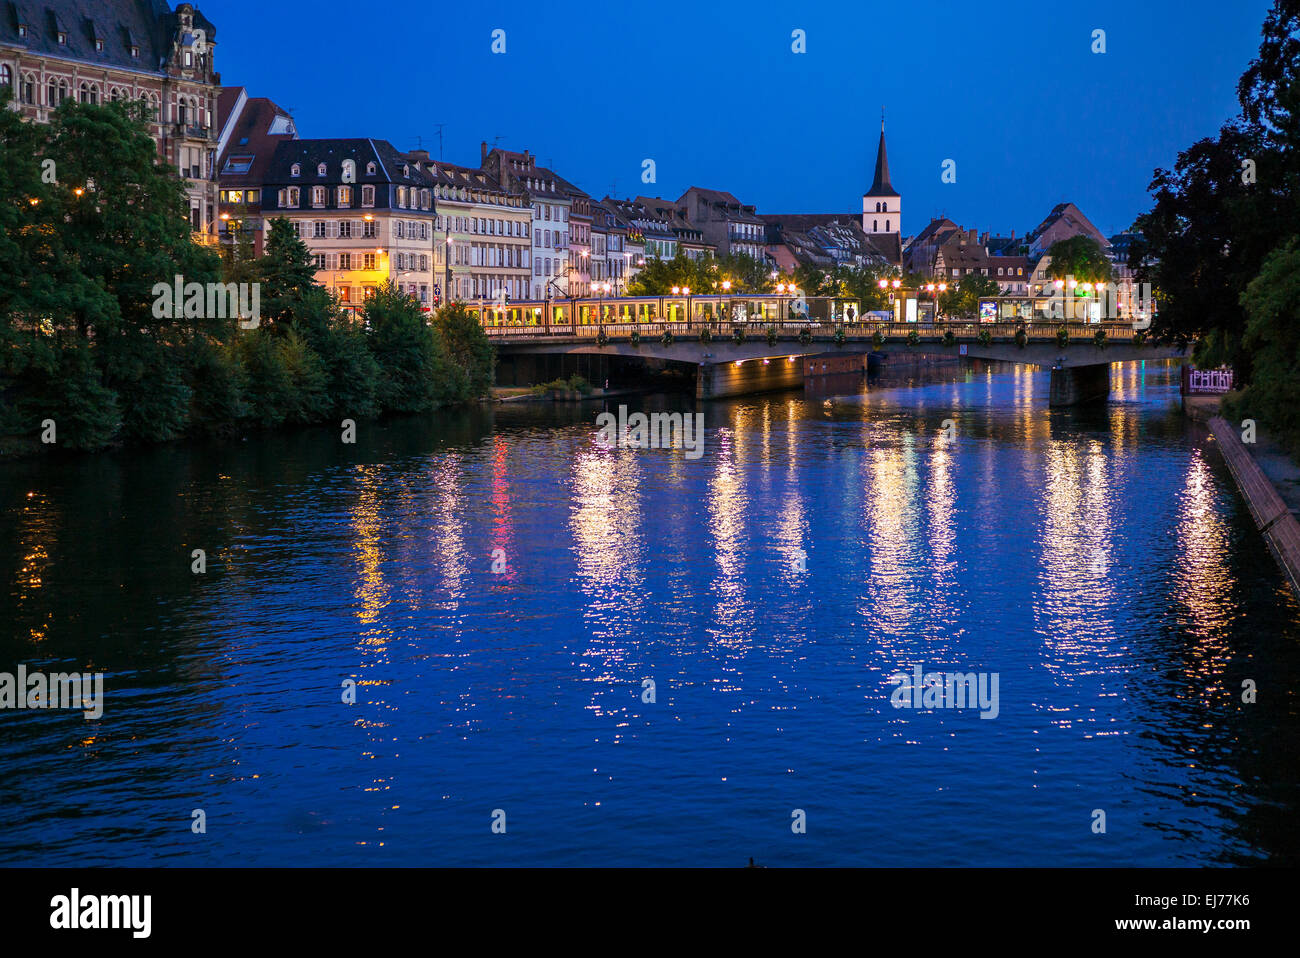 Quai des Pêcheurs, pescatori quay, Royal bridge, stazione dei tram, il fiume Ill durante la notte, Strasburgo, Alsazia, Francia, Europa Foto Stock